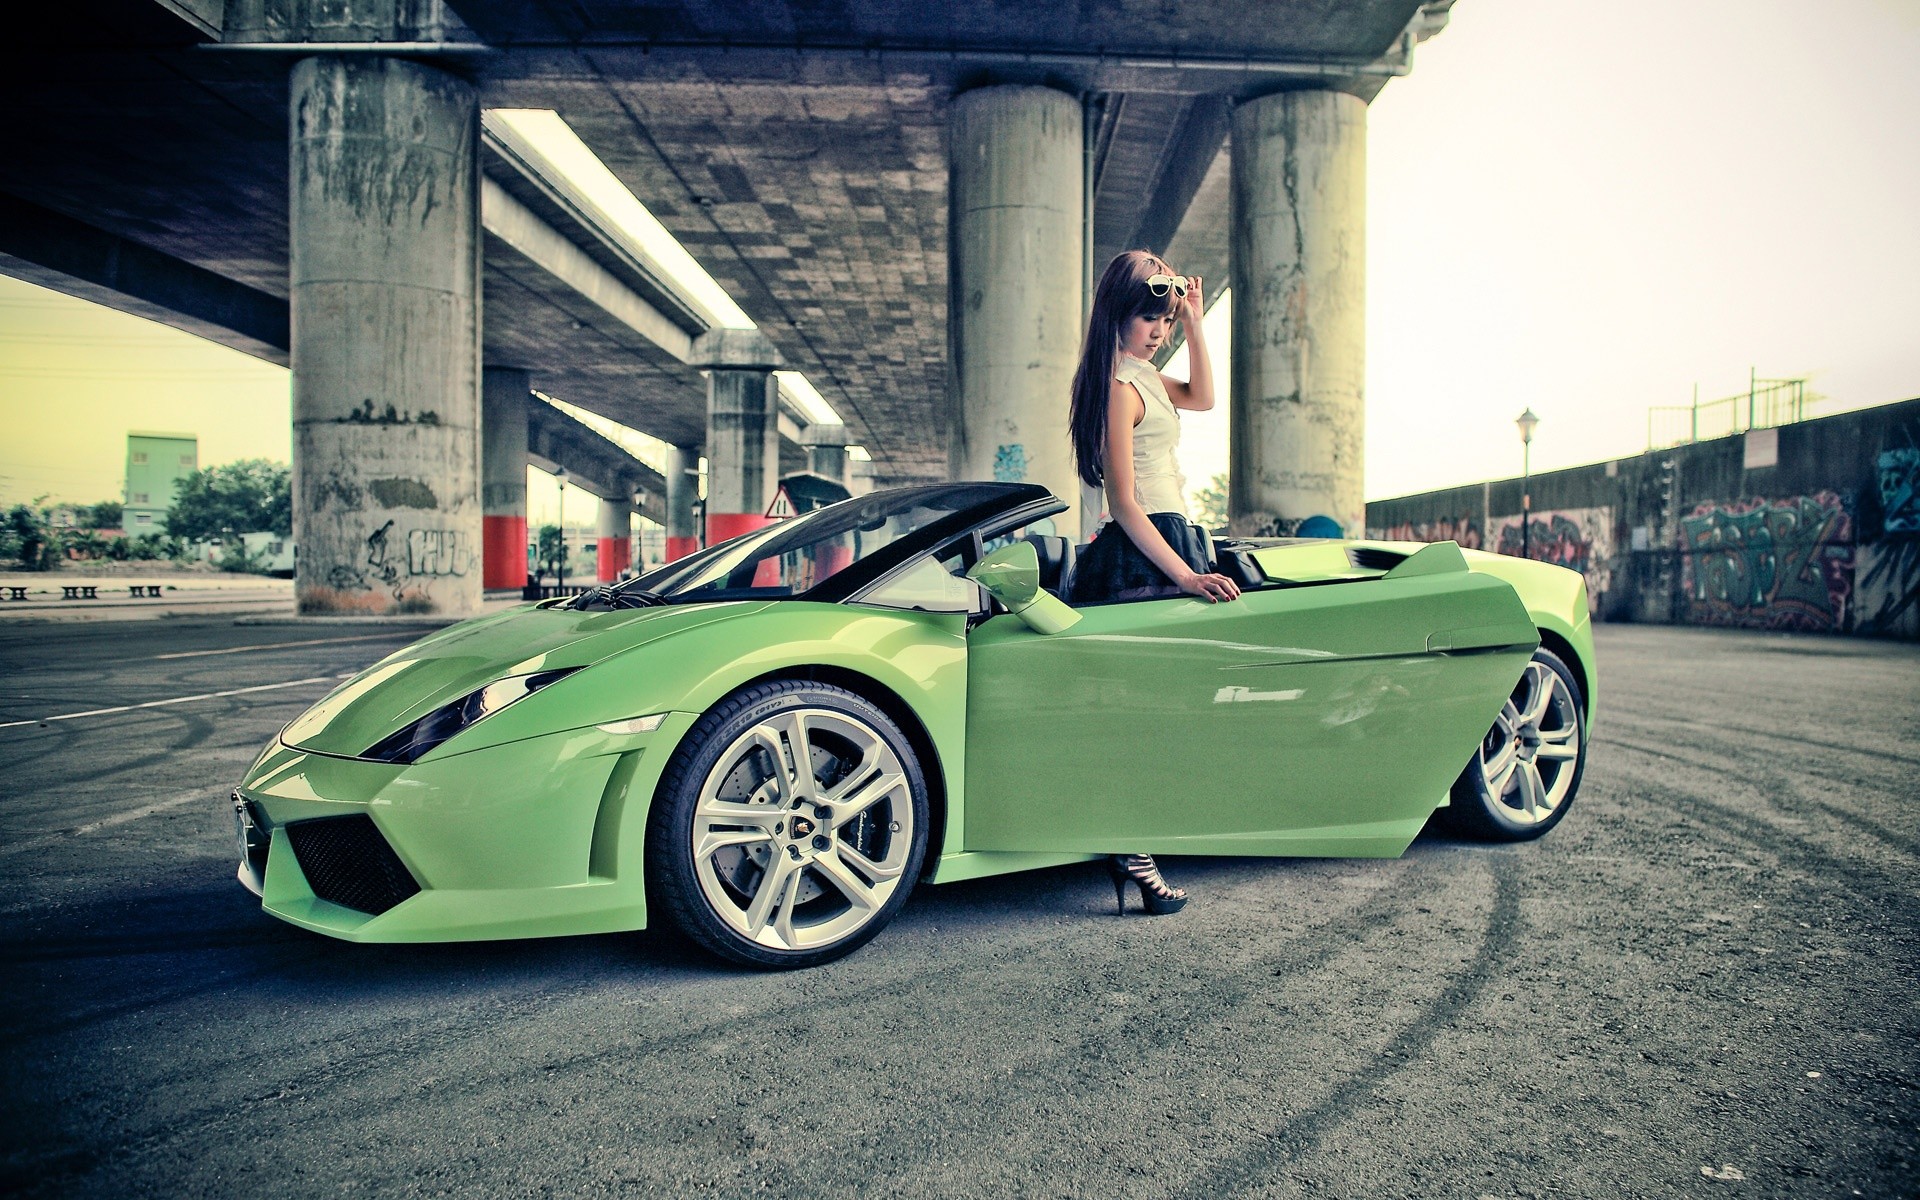 women, Models, Lamborghini, Sunglasses, Versus, Italian, Supercars, Girls, With, Cars, Lamborghini, Gallardo, Spyder, Green, Cars Wallpaper